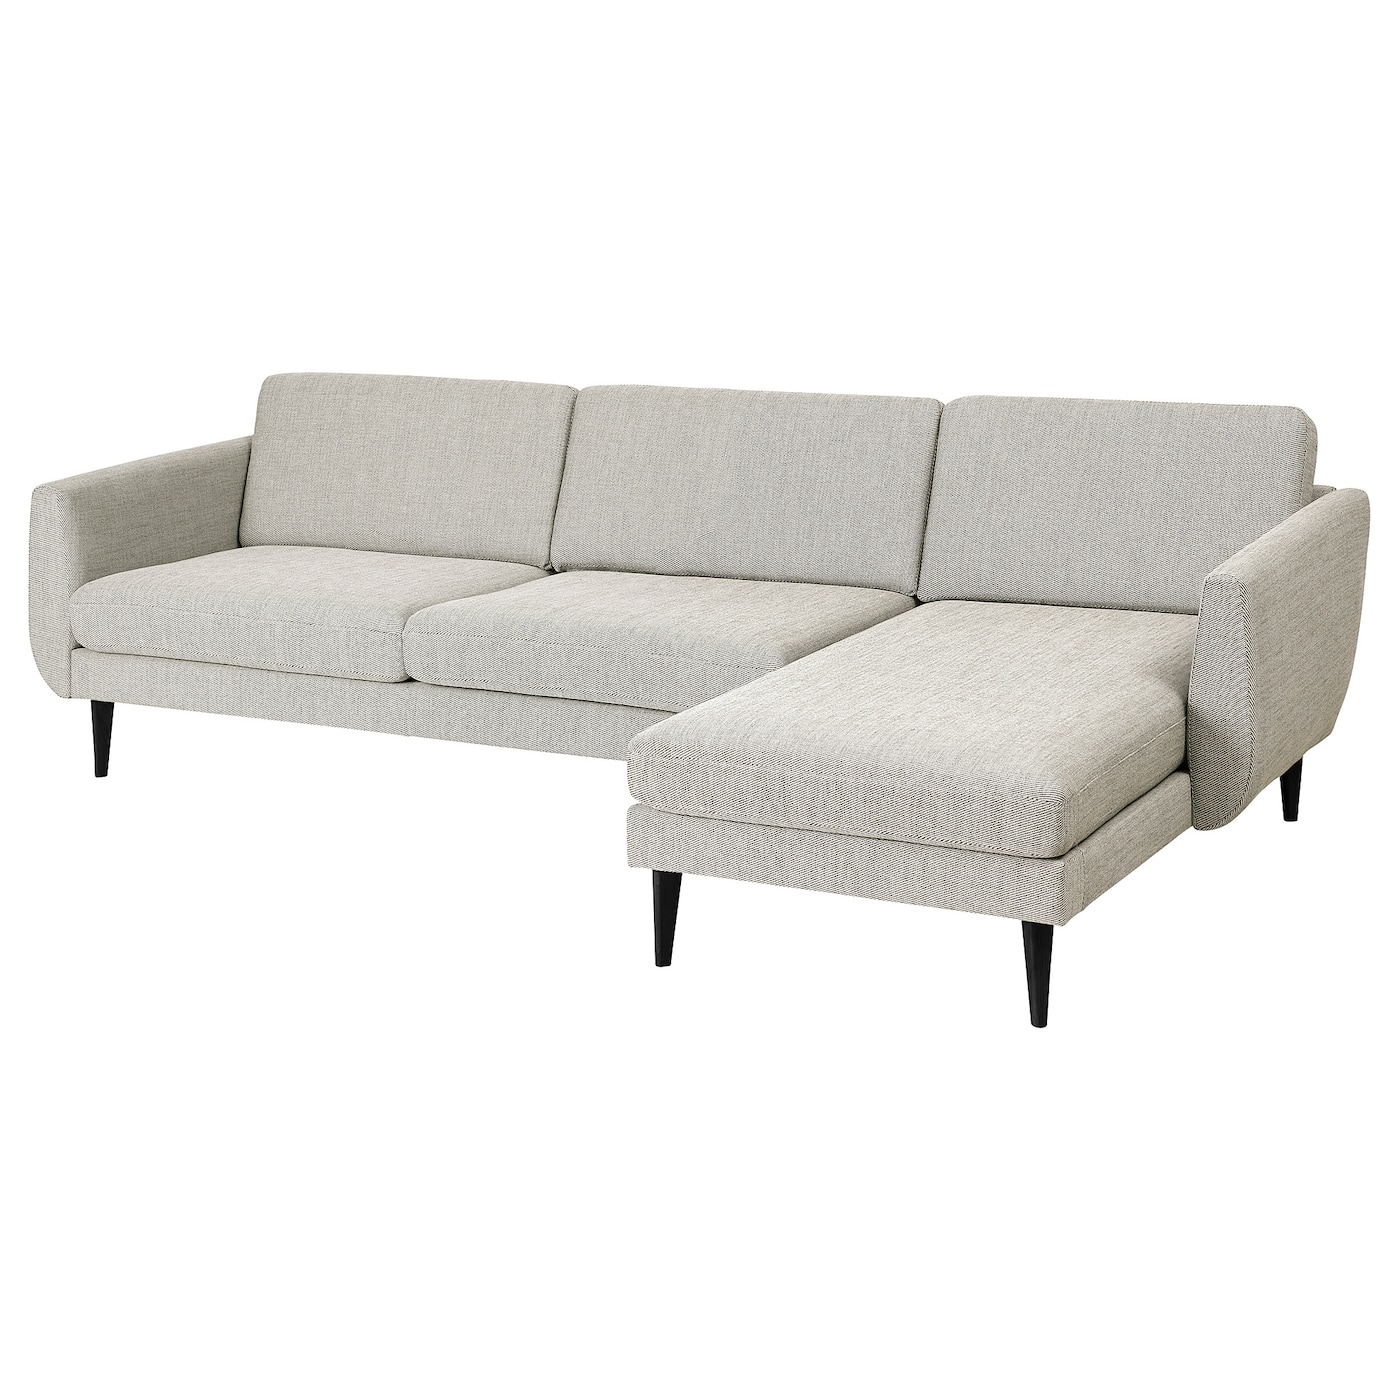 СМЕДСТОРП 4-местный диван + диван, Виарп бежевый/коричневый/черный SMEDSTORP IKEA